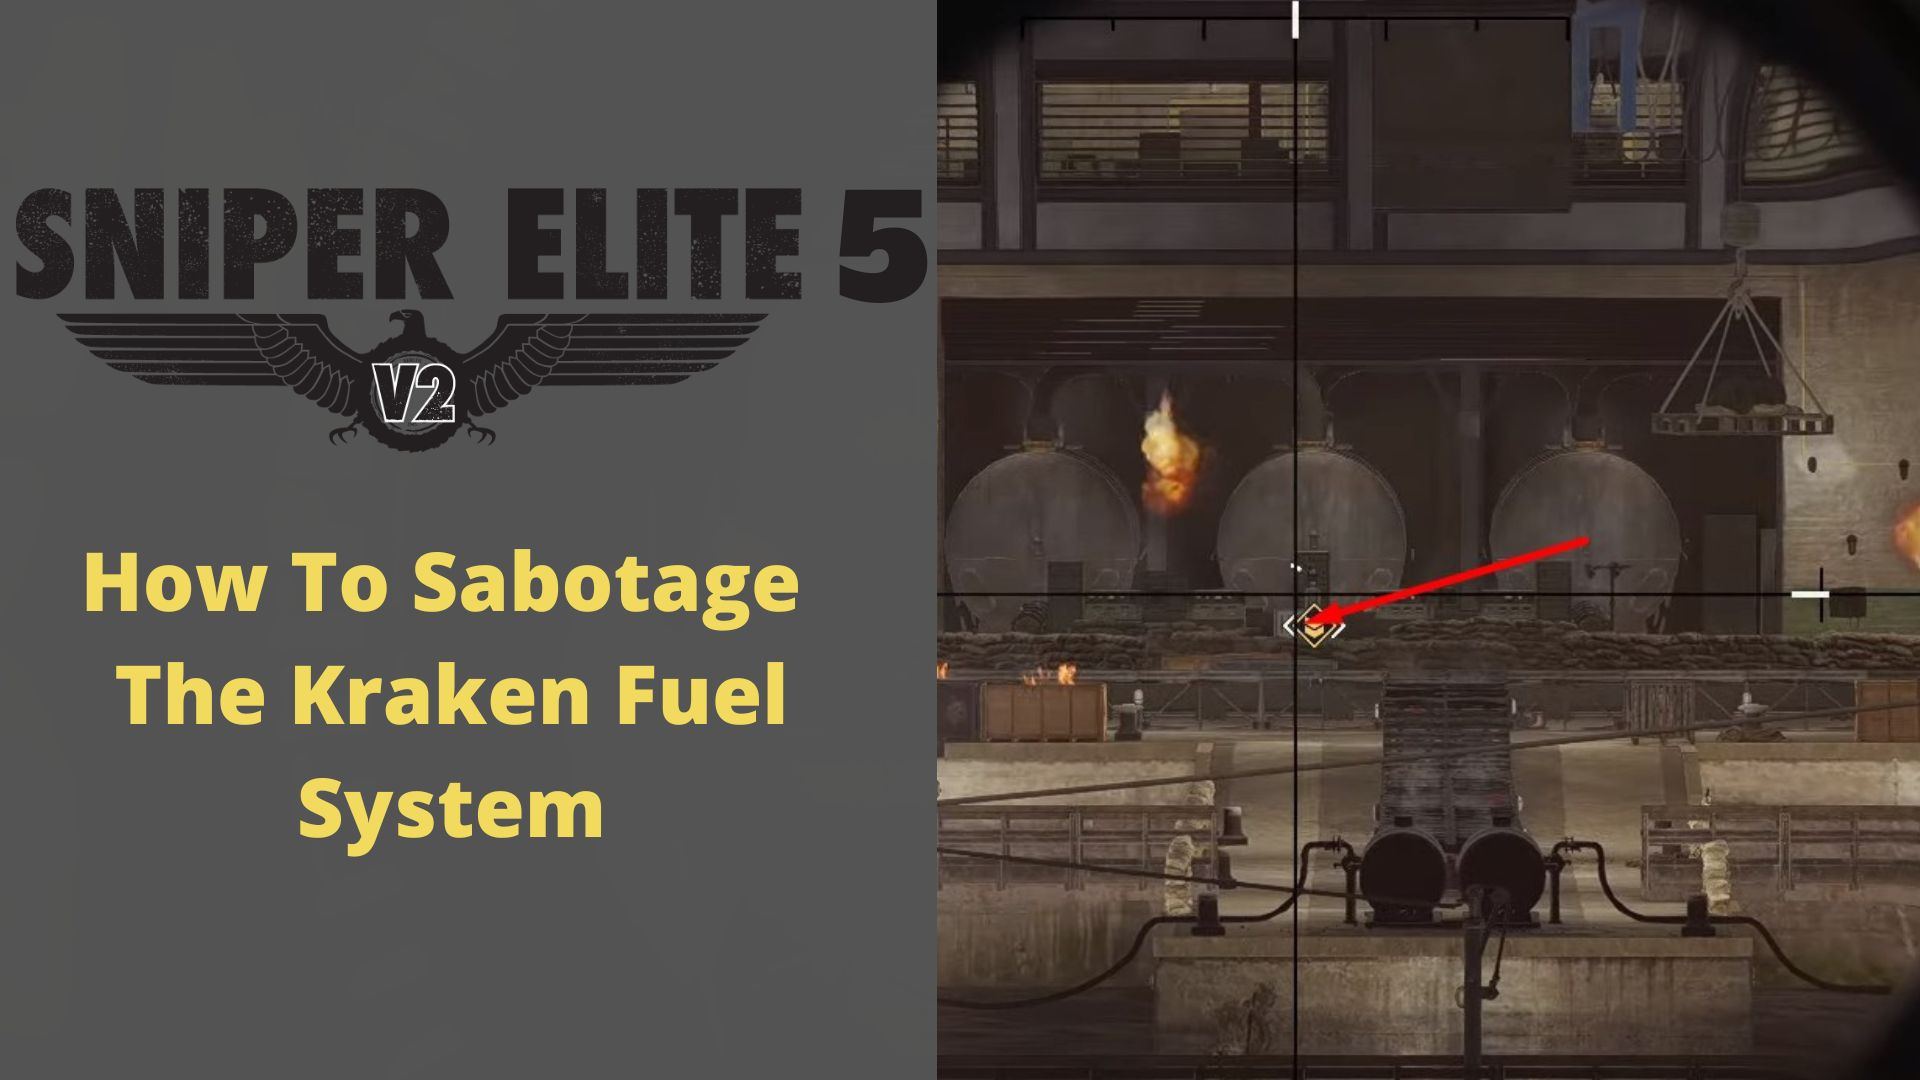 Sniper Elite 5: How To Sabotage The Kraken Fuel System